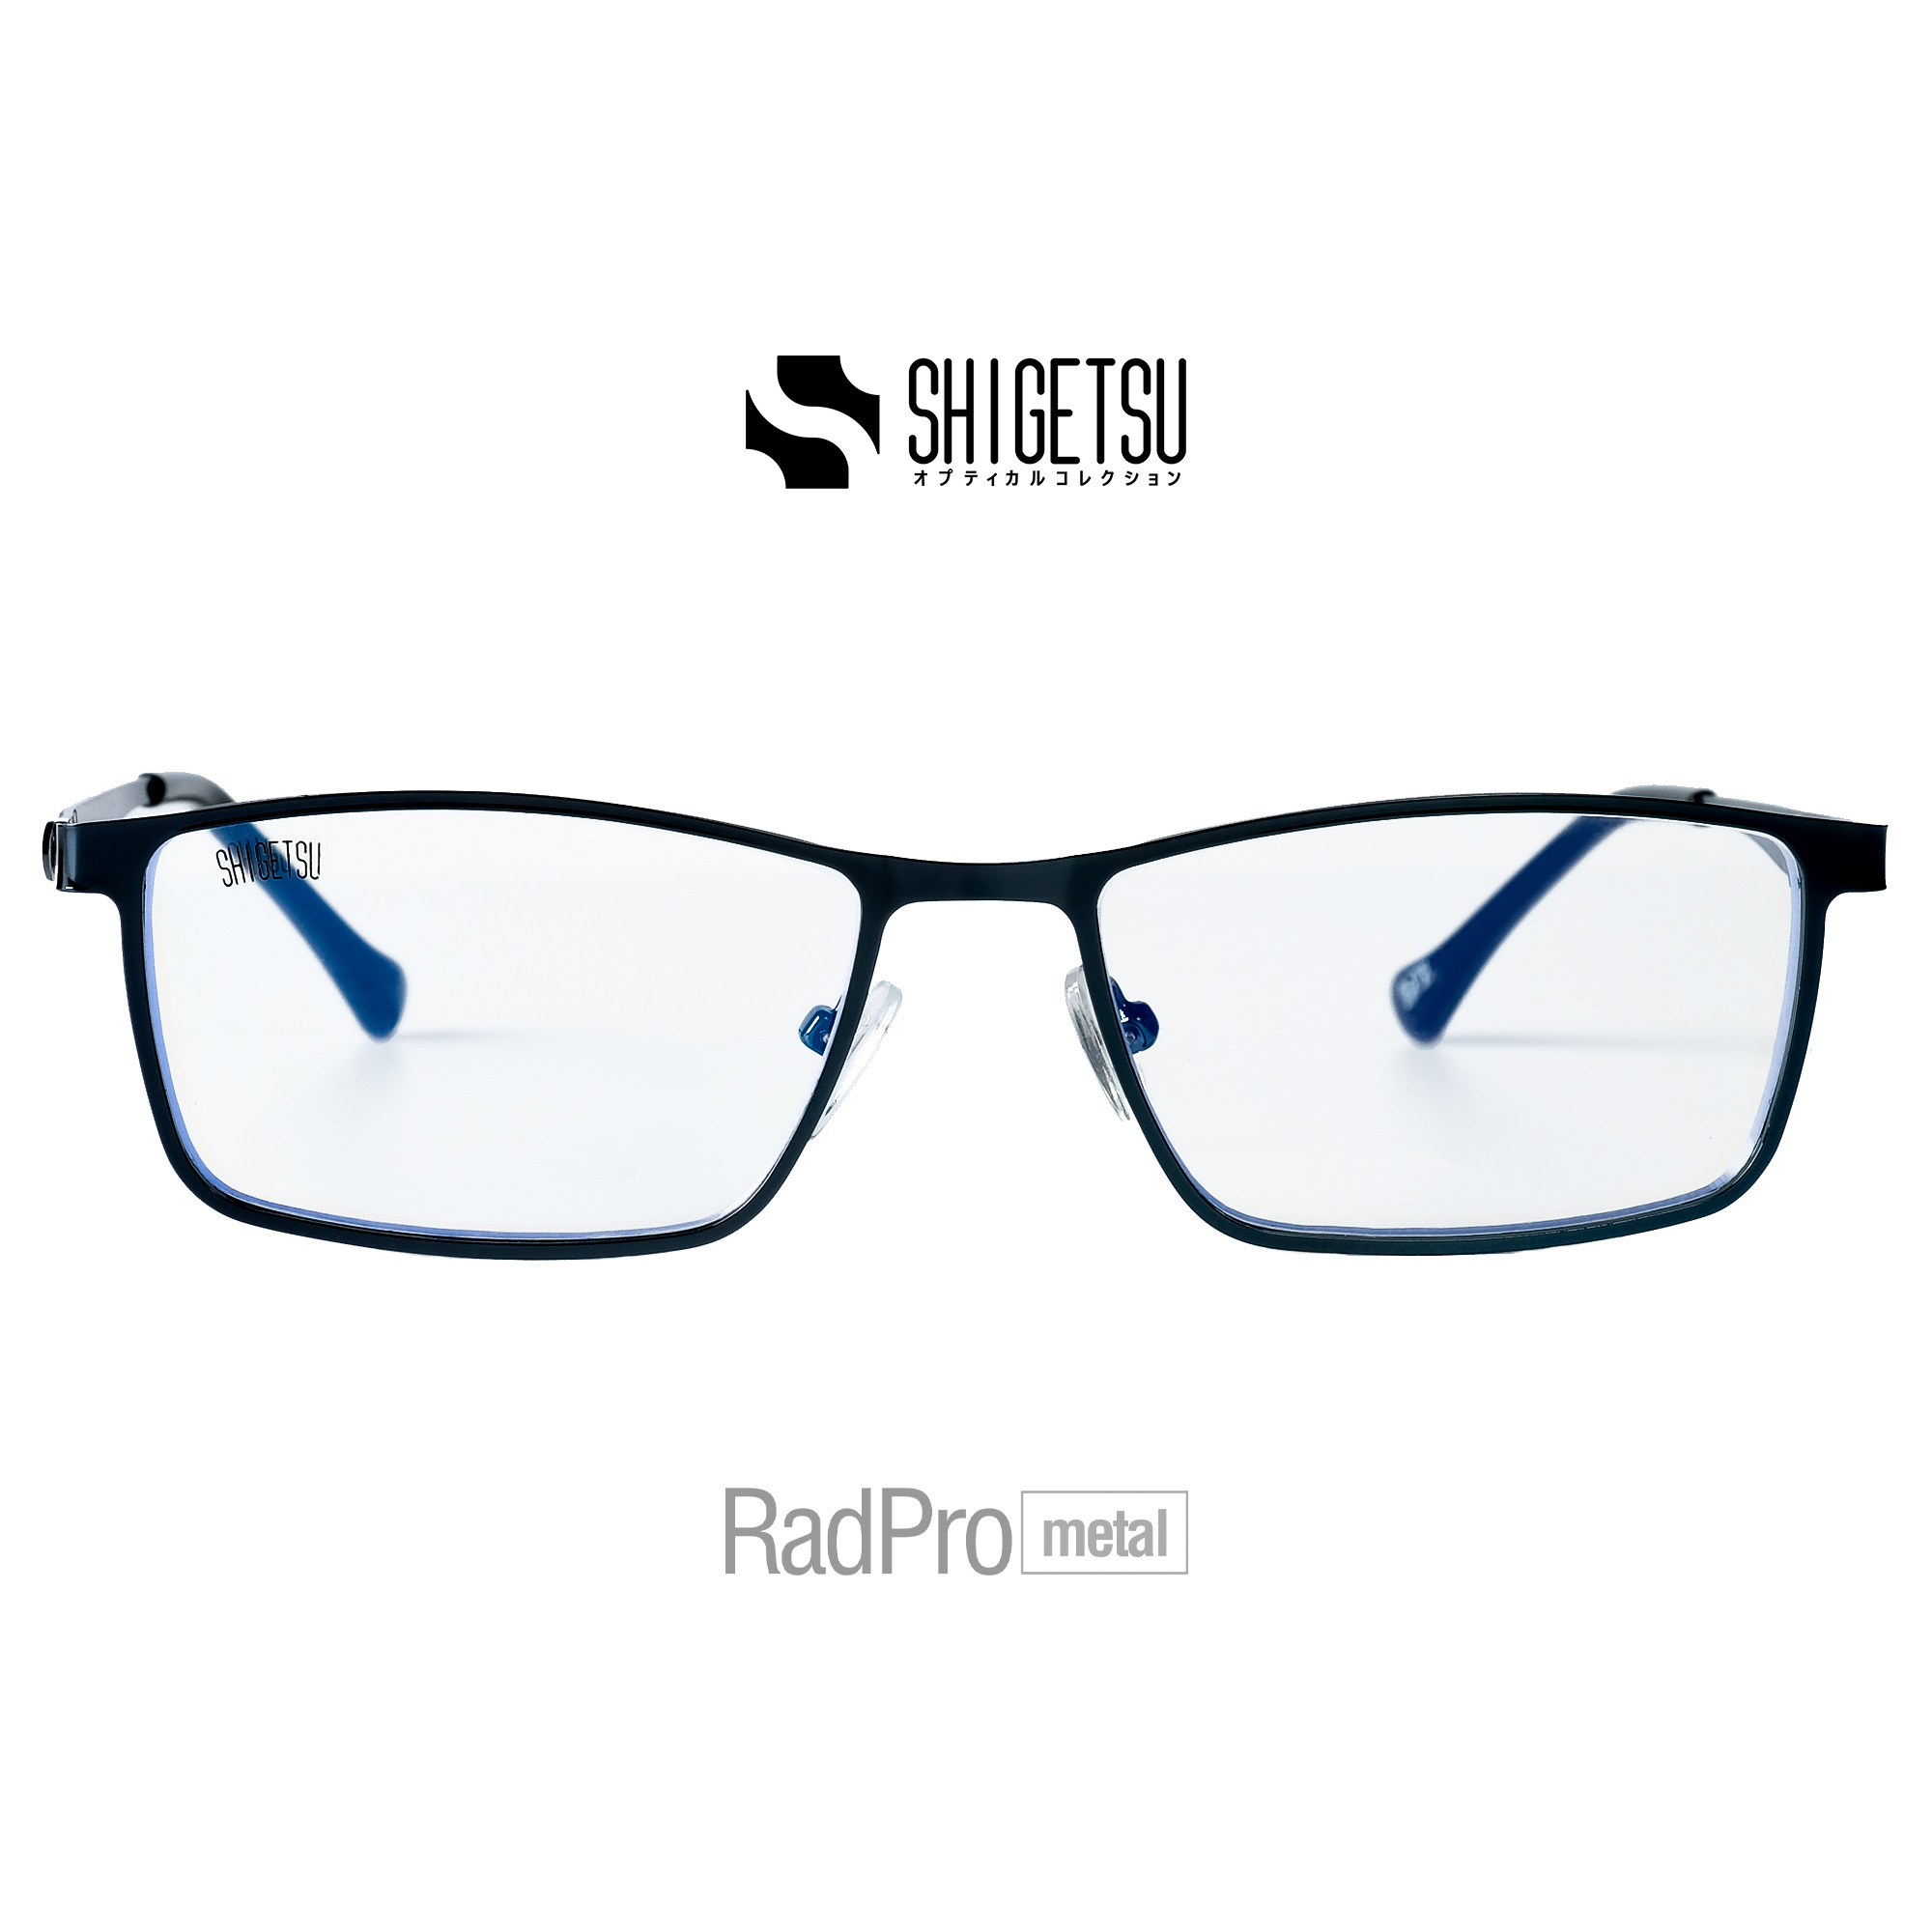 Shigetsu Eyewear AKITA RadPro Eyeglasses in Full Rim Rectangle Metal ...